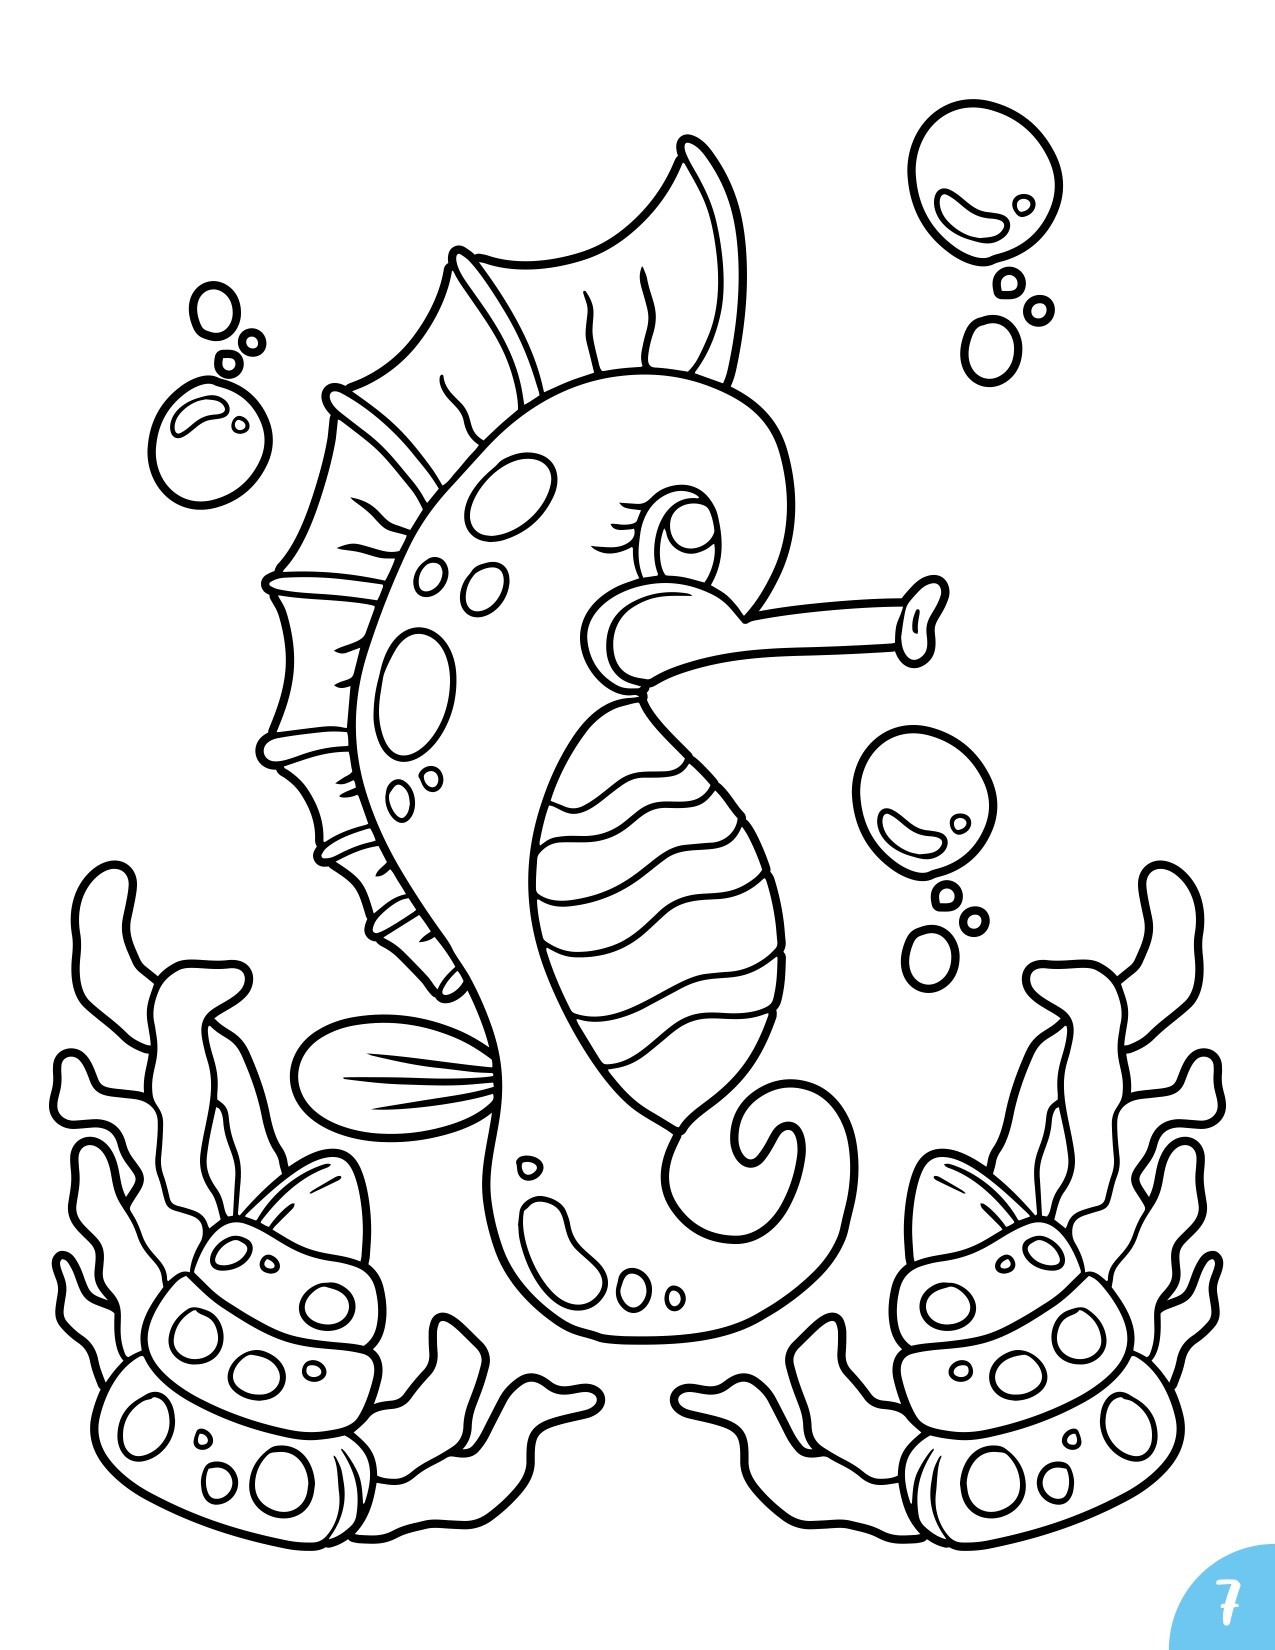 Disegno da colorare di cavalluccio marino kawaii per bambini